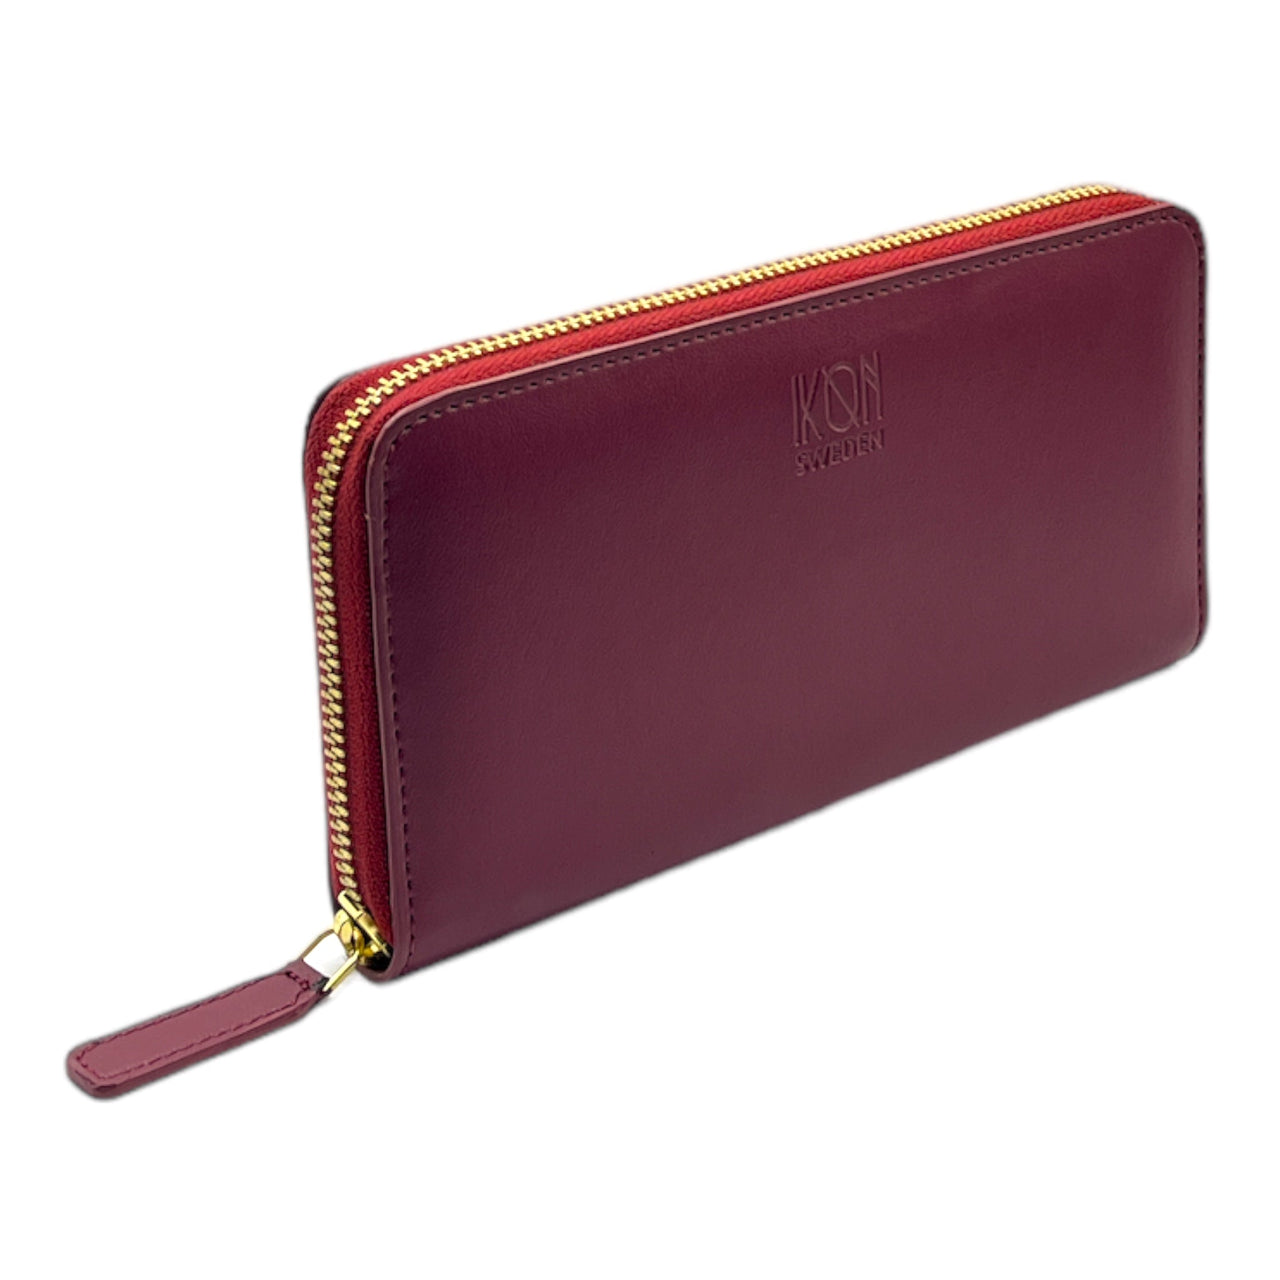 Kivik | Apple Leather Long Zip Wallet - Wine Red-0